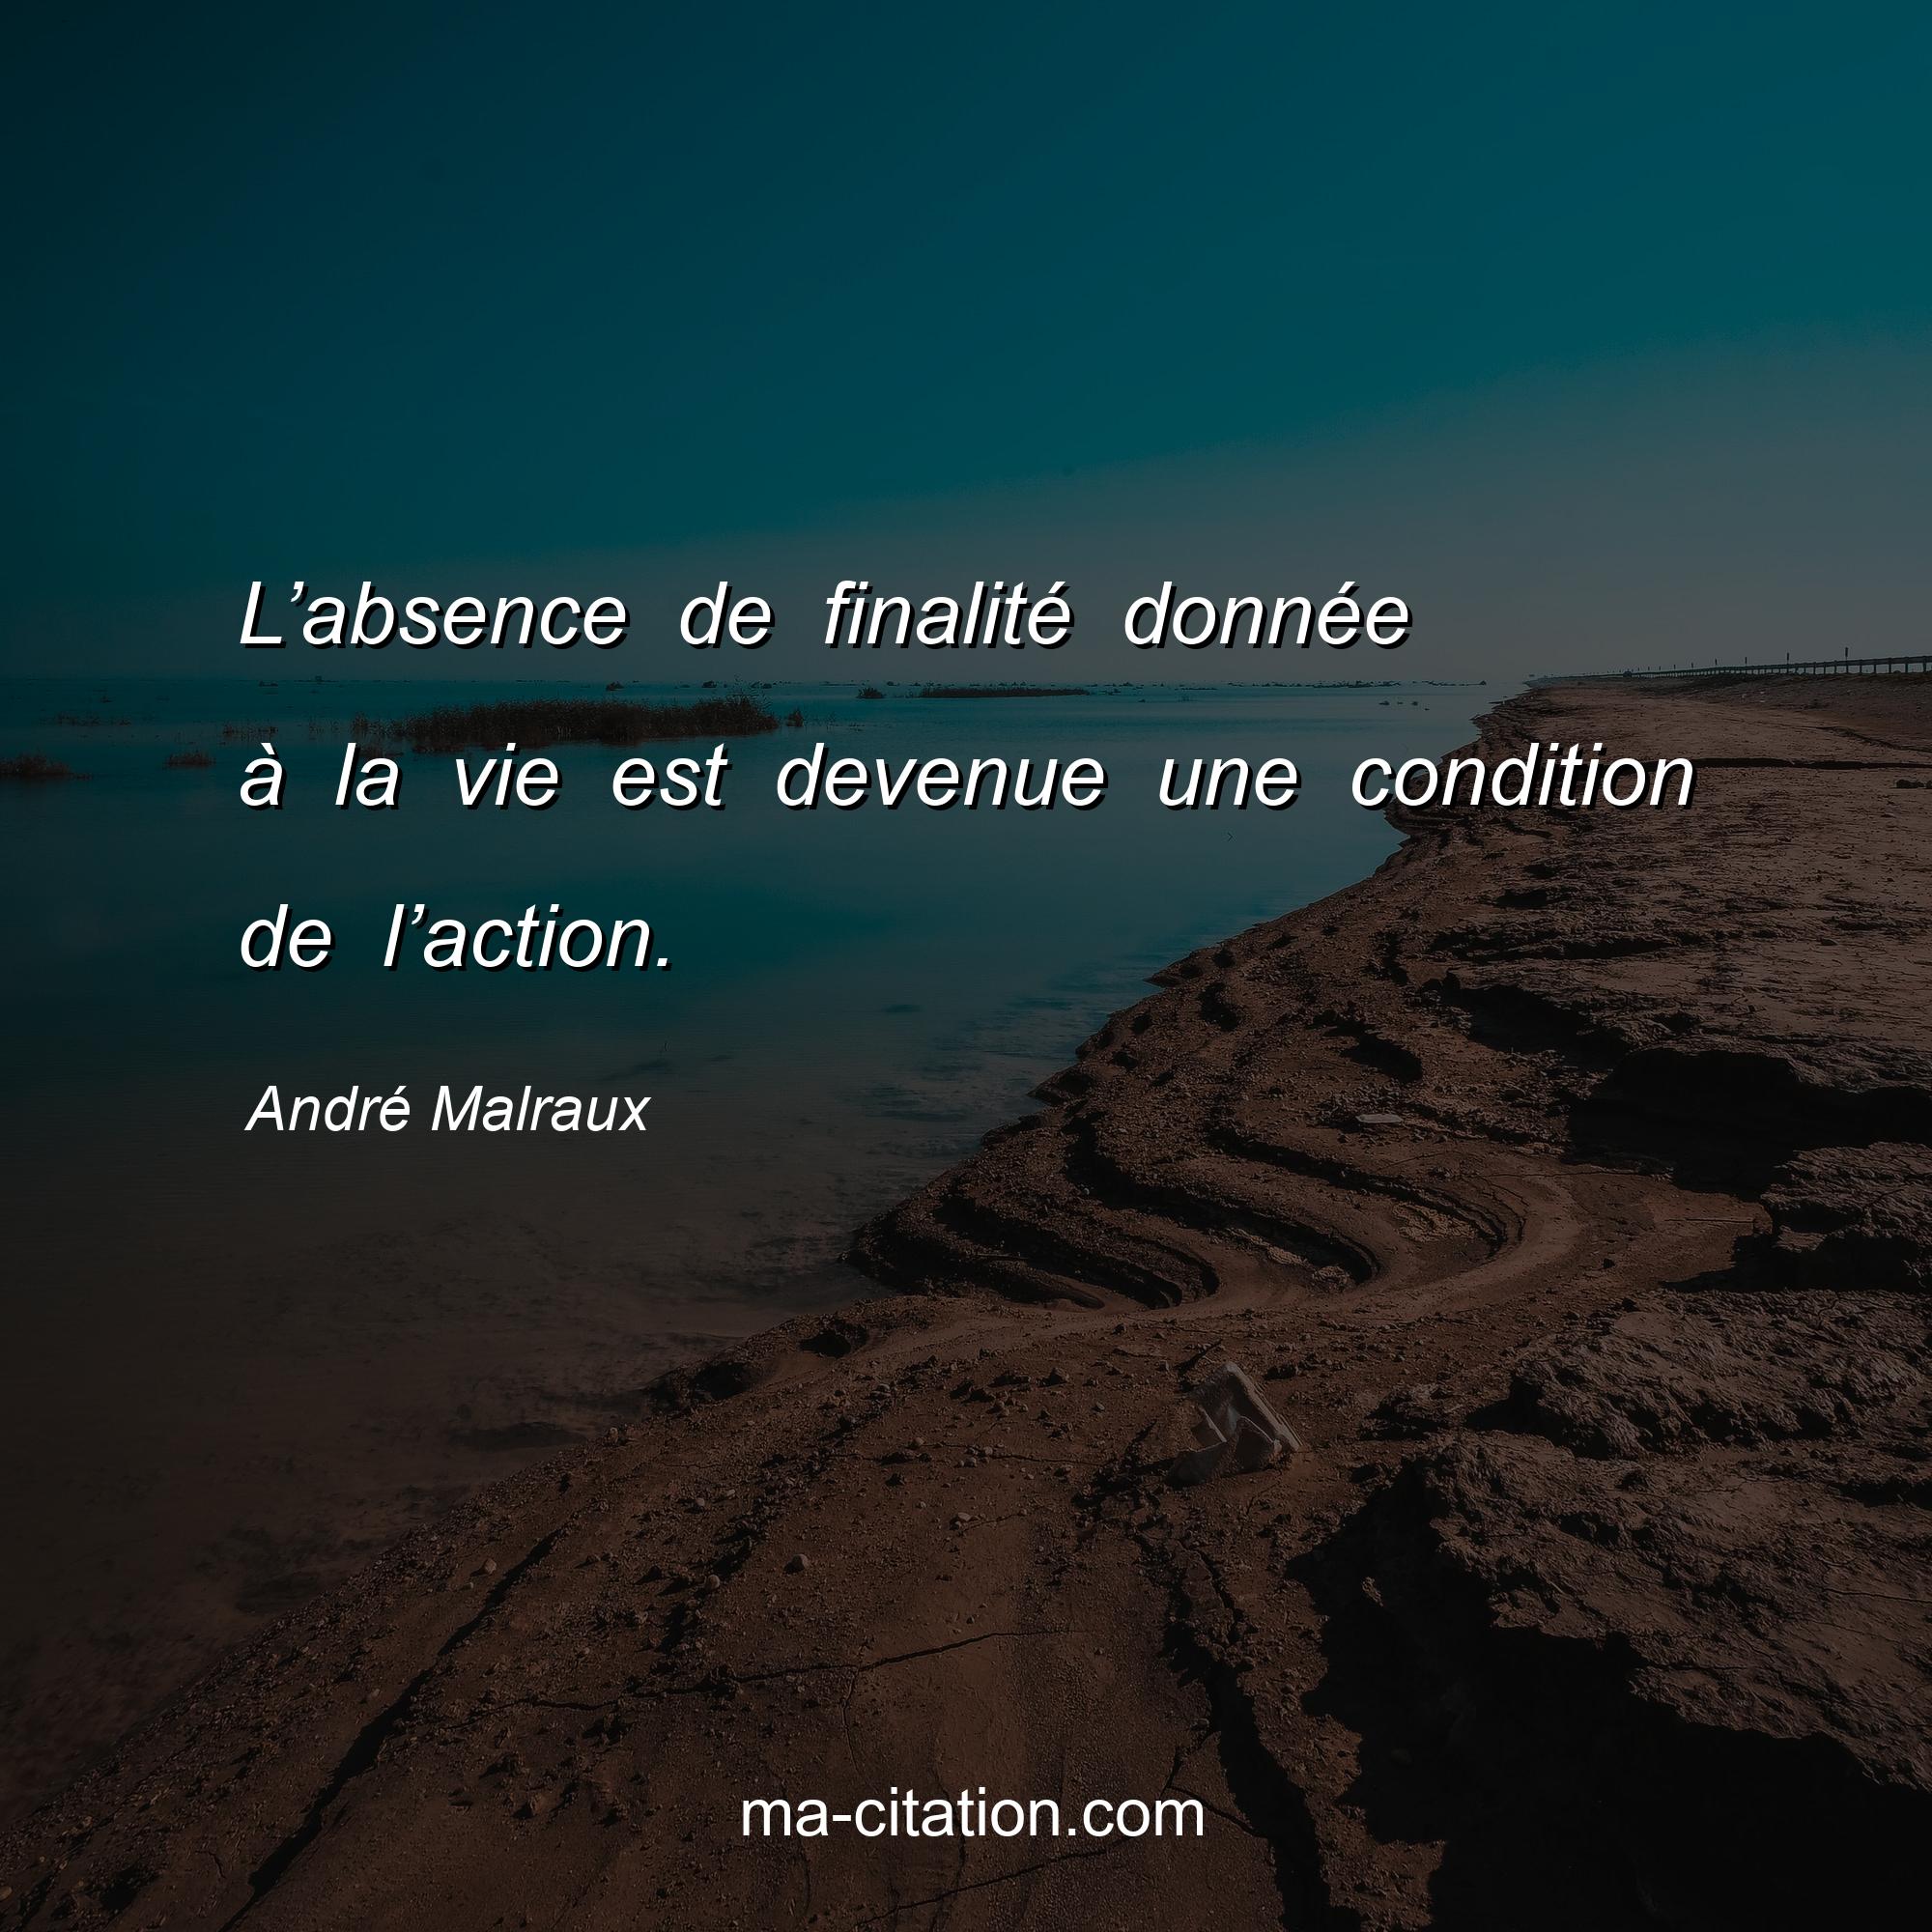 André Malraux : L’absence de finalité donnée à la vie est devenue une condition de l’action.